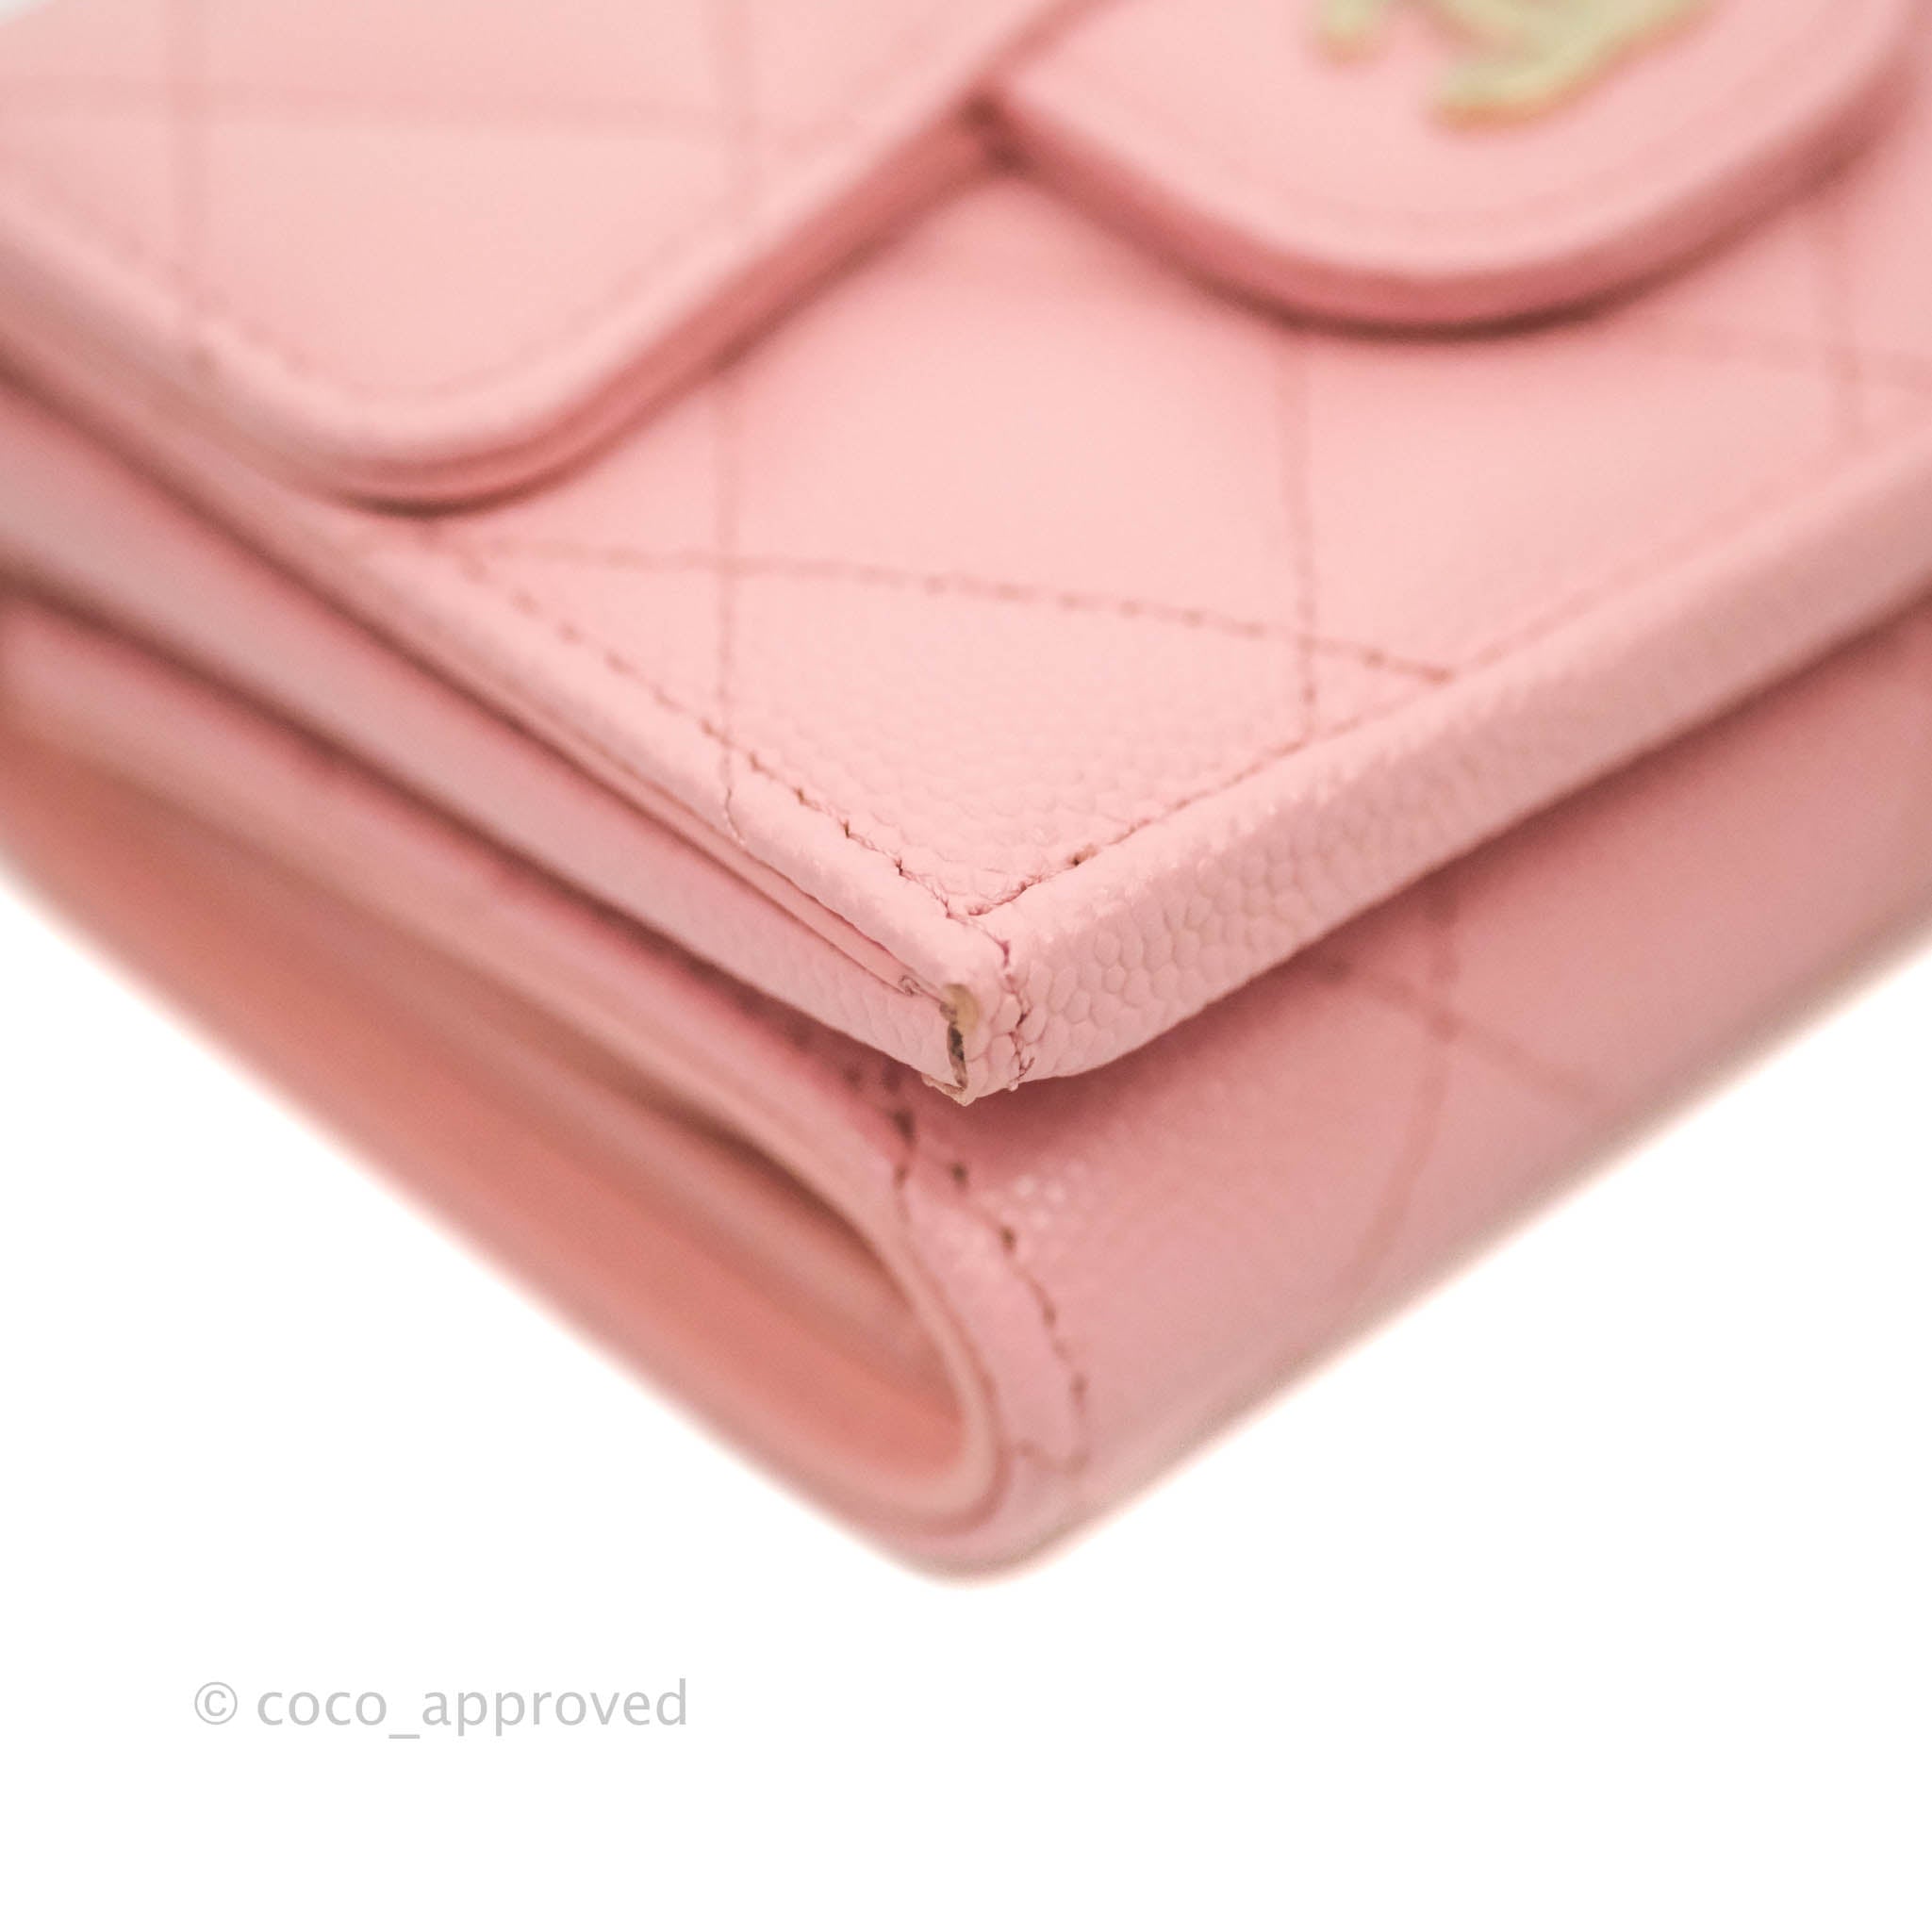 Chanel Pink Caviar Zip Around Wallet Q6ADVD0FPB023